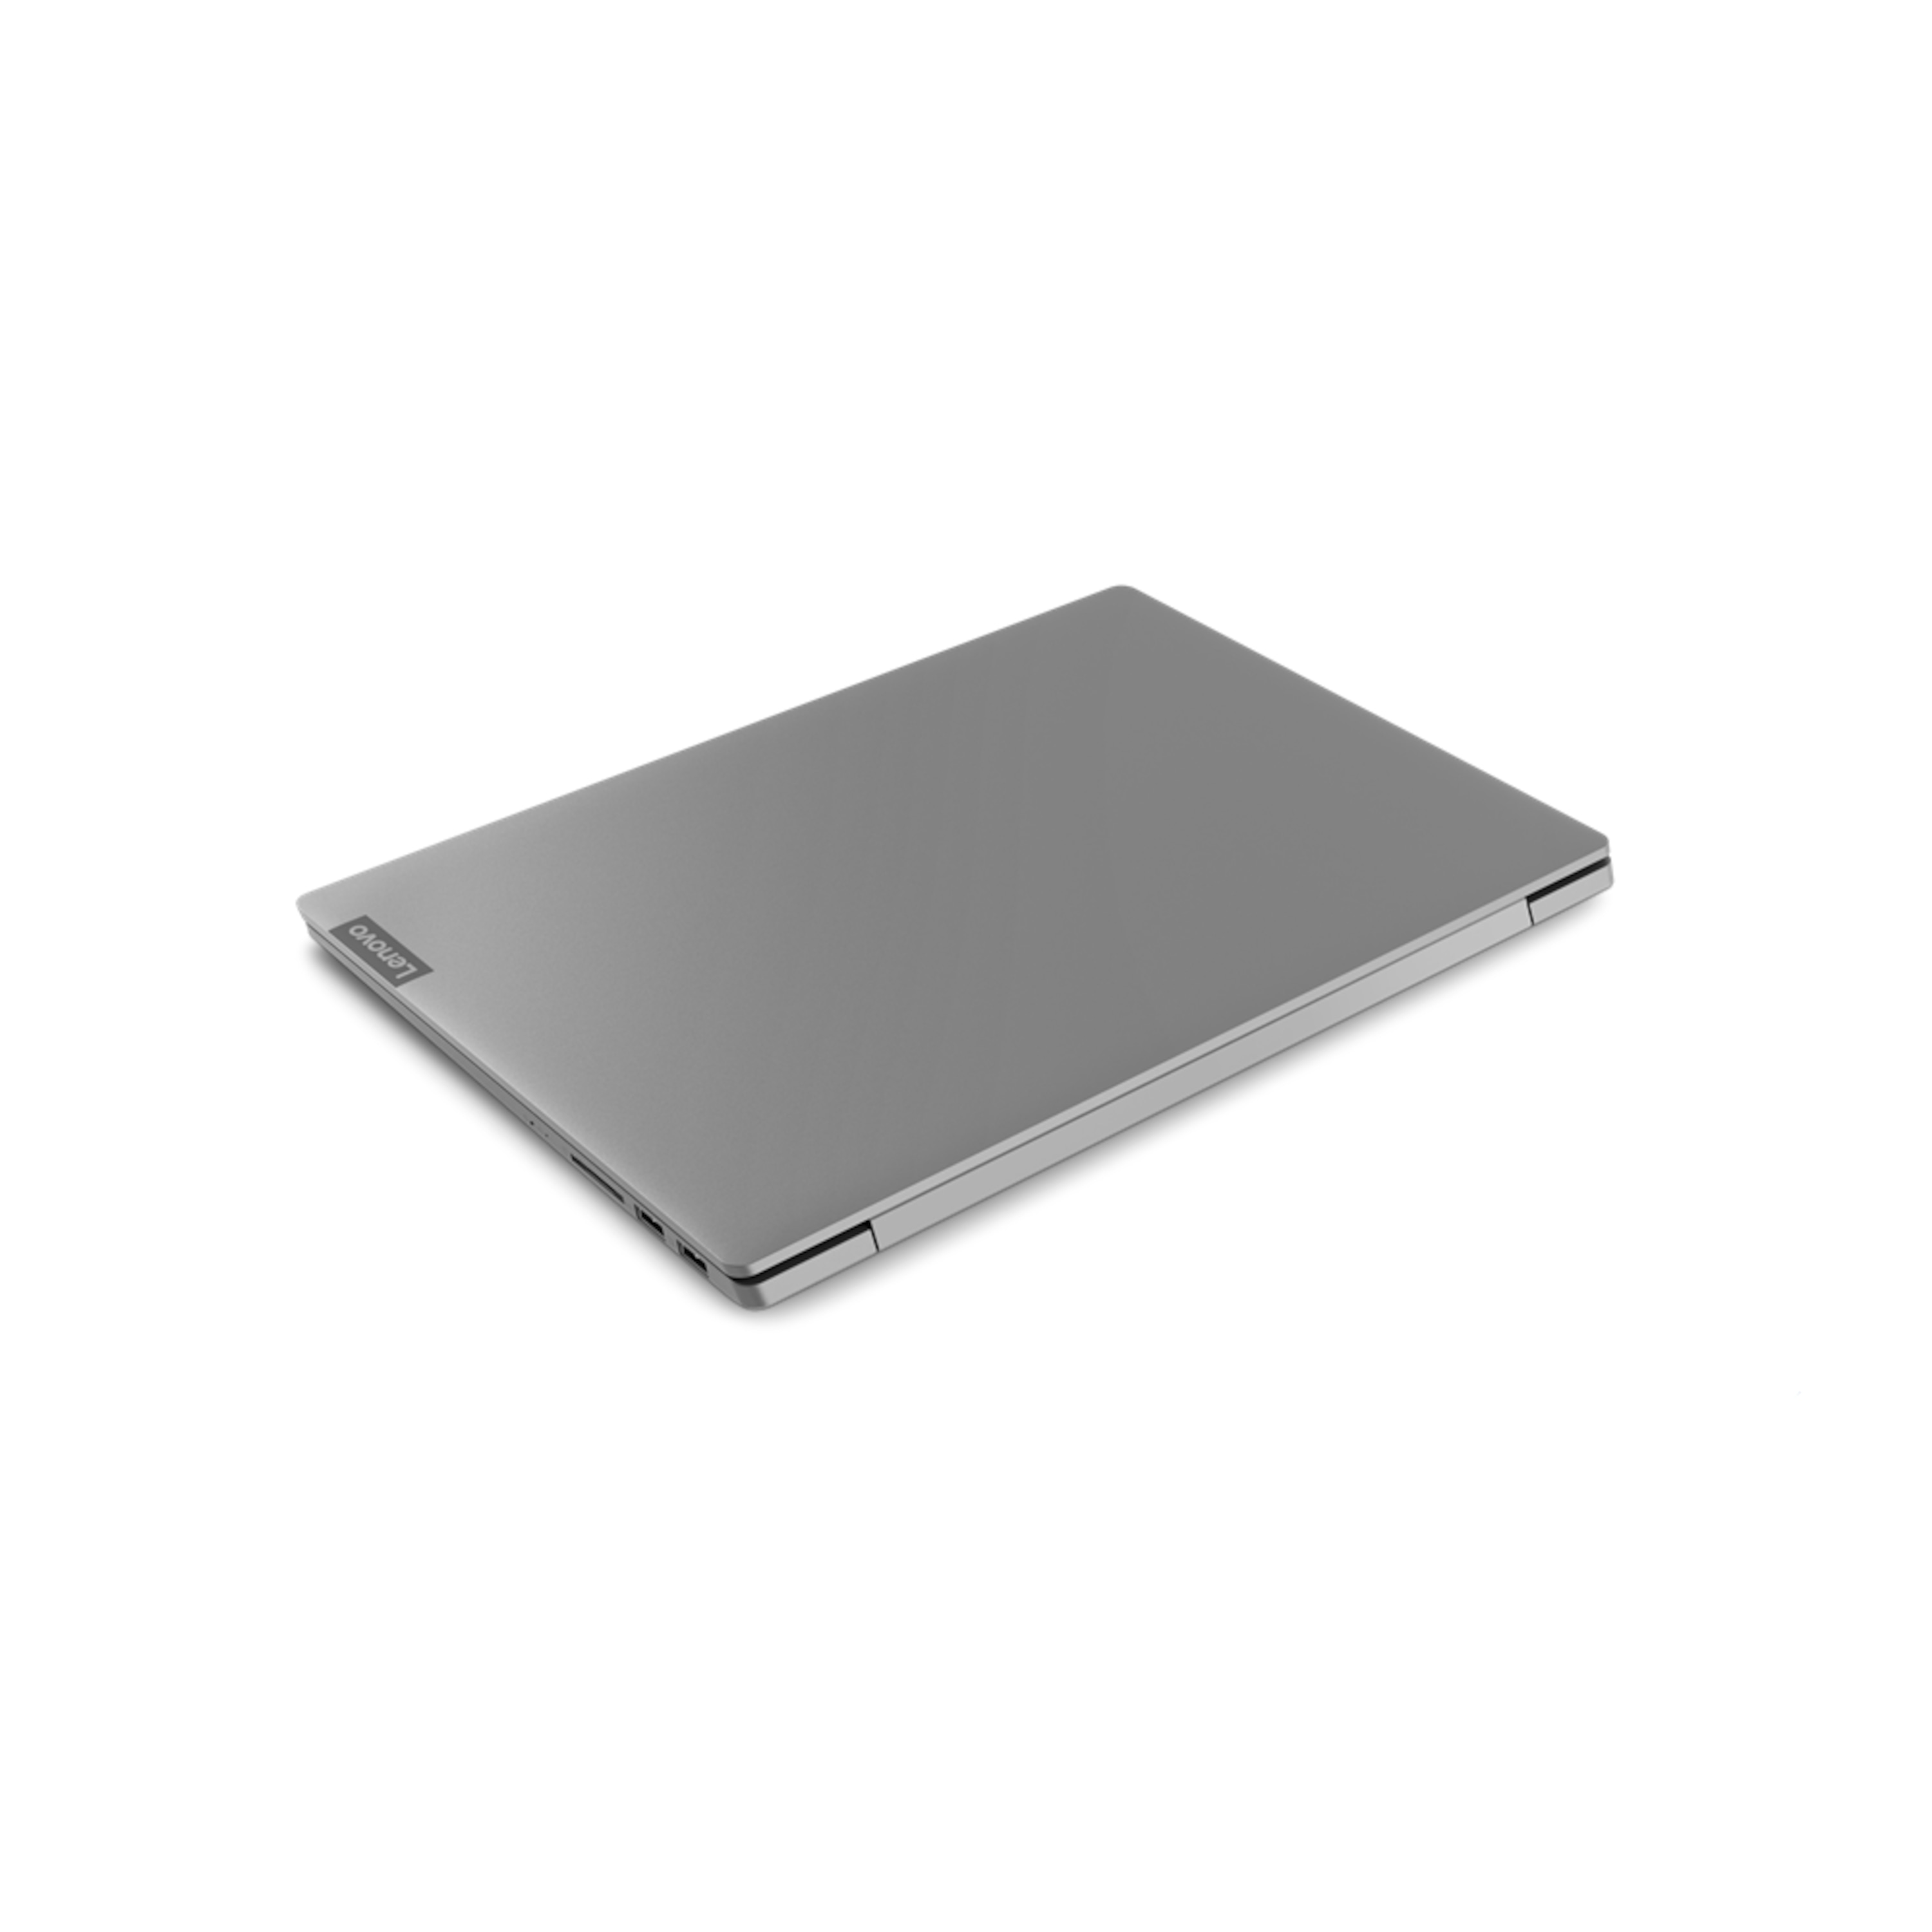 LENOVO IdeaPad™ S540-14IWL, Intel® Core™ i7-8565U, Windows 10 Home, 35,6 cm (14") FHD Display, MX 250, 1 TB SSD, 12 GB RAM, Notebook   (B-Ware)